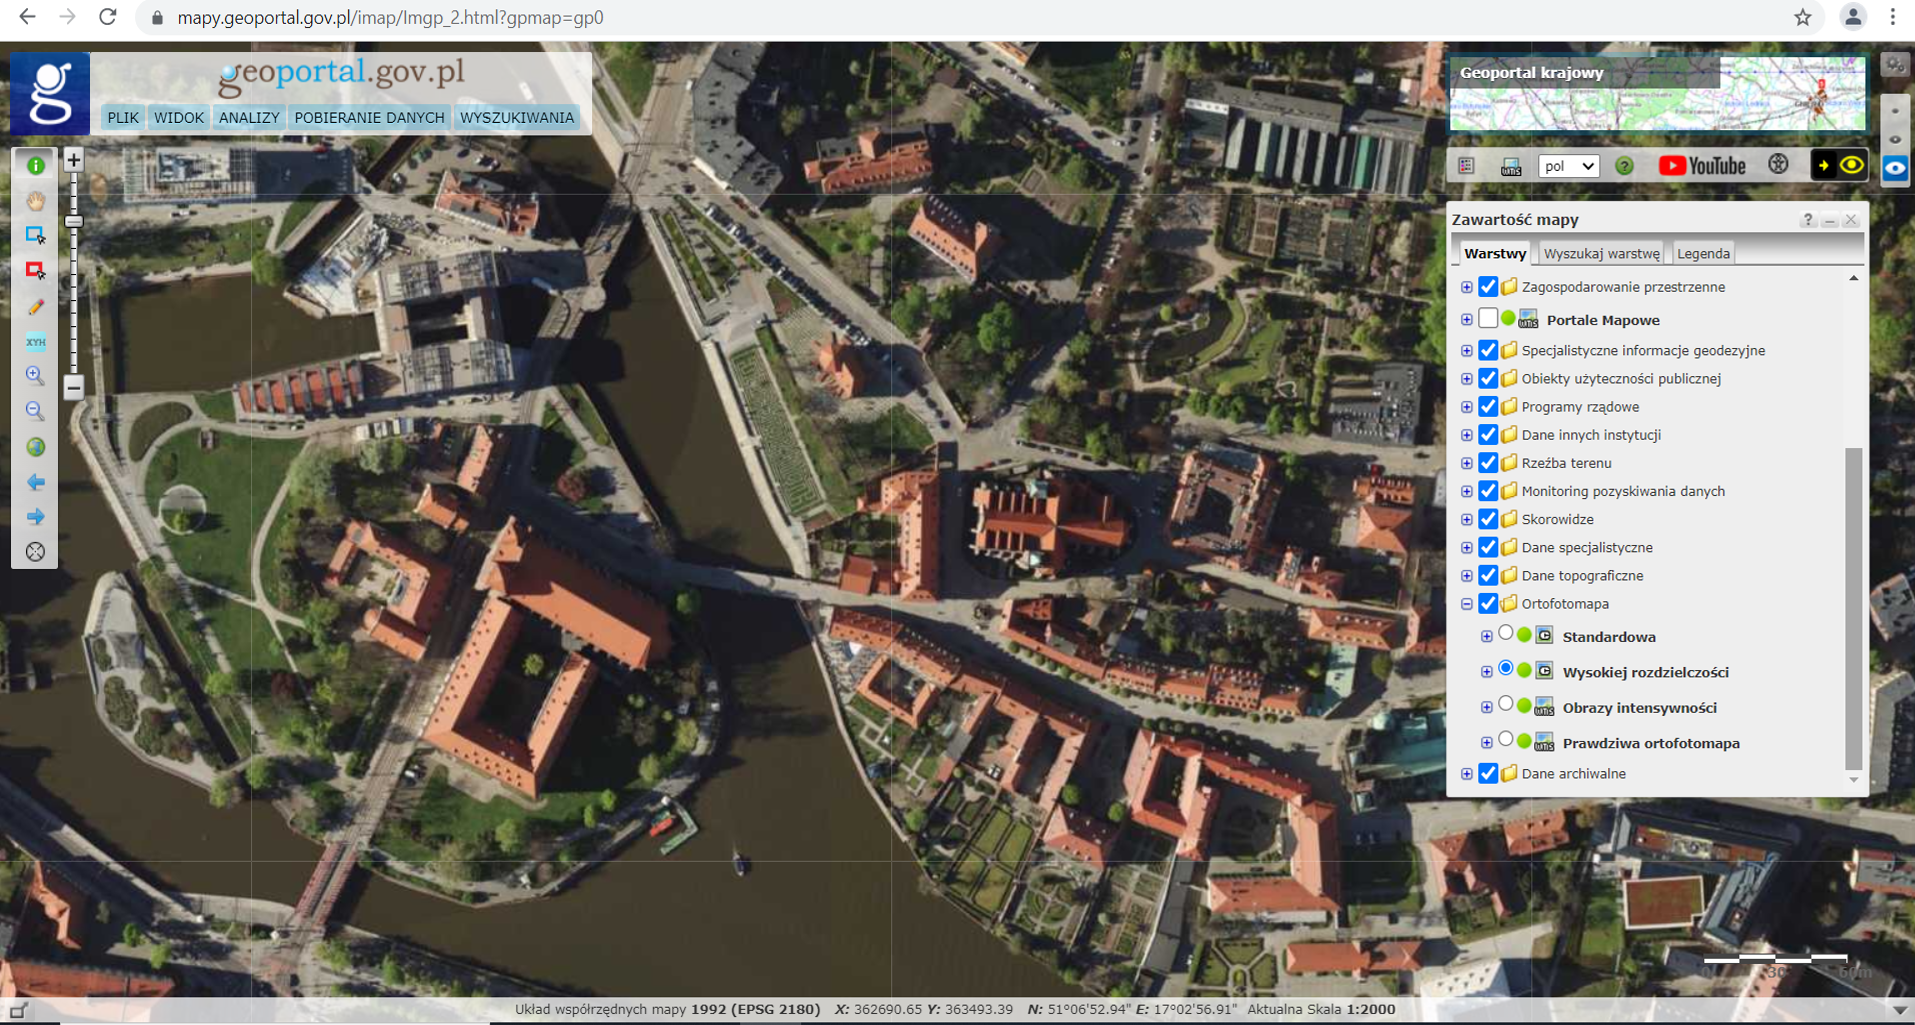 Ilustracja przedstawia zrzut ekranu z serwisu www.geoportal.gov.pl pokazujący miasto Wrocław w usłudze Ortofotomapa Wysokiej Rozdzielczości